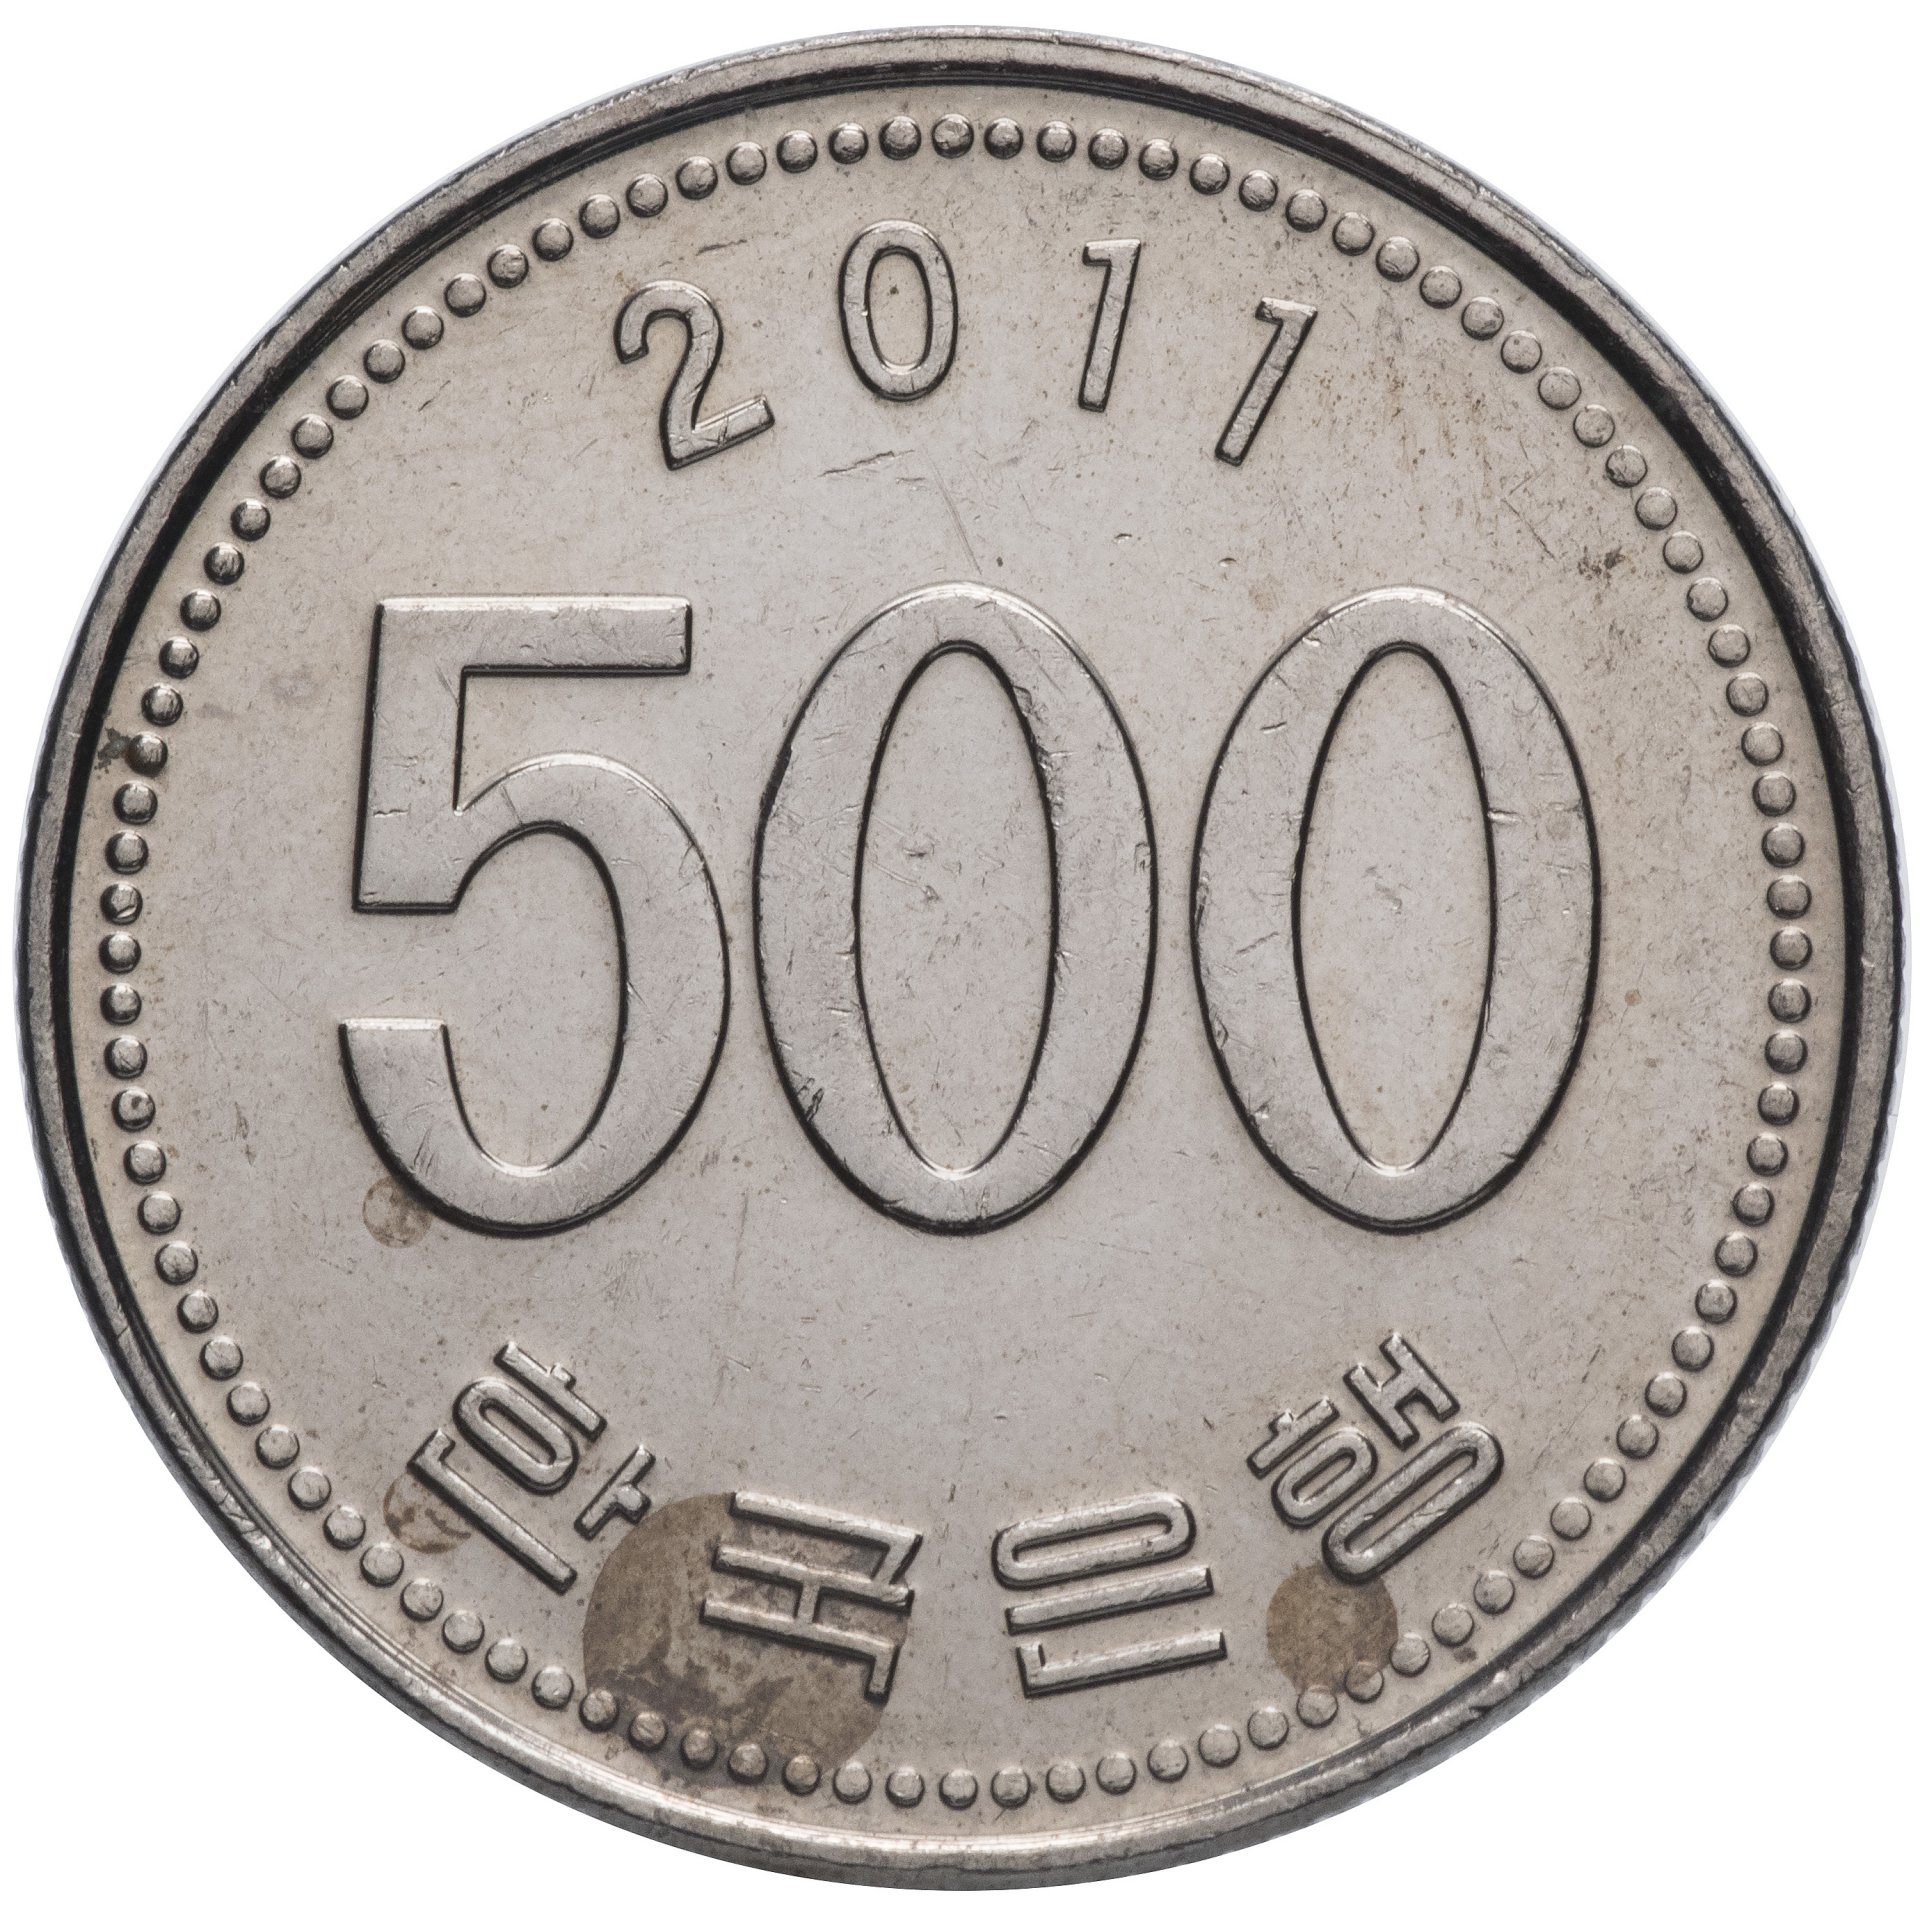 100 вон это сколько. 100 Вон Южная Корея 1994. Южная Корея 100 вон 1987. Корея 100 вон 1983. Монетка корейская 100 вон.